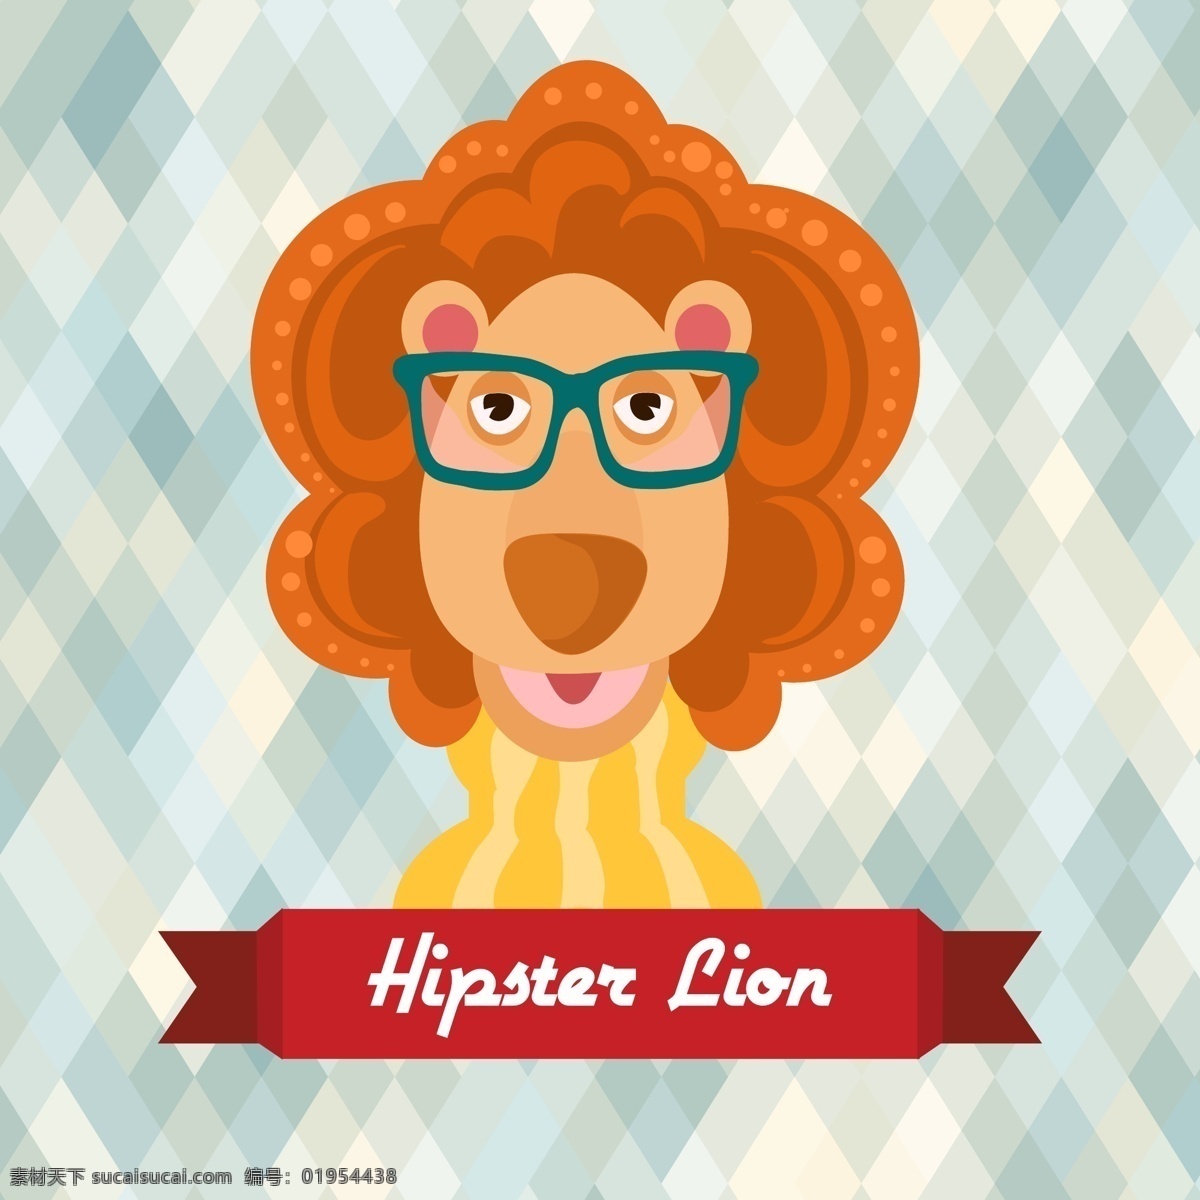 戴 眼镜 狮子 打扮 时髦 动物 穿着毛衣 多边形背景 卡通 彩色 扁平化 矢量 贴纸 手账